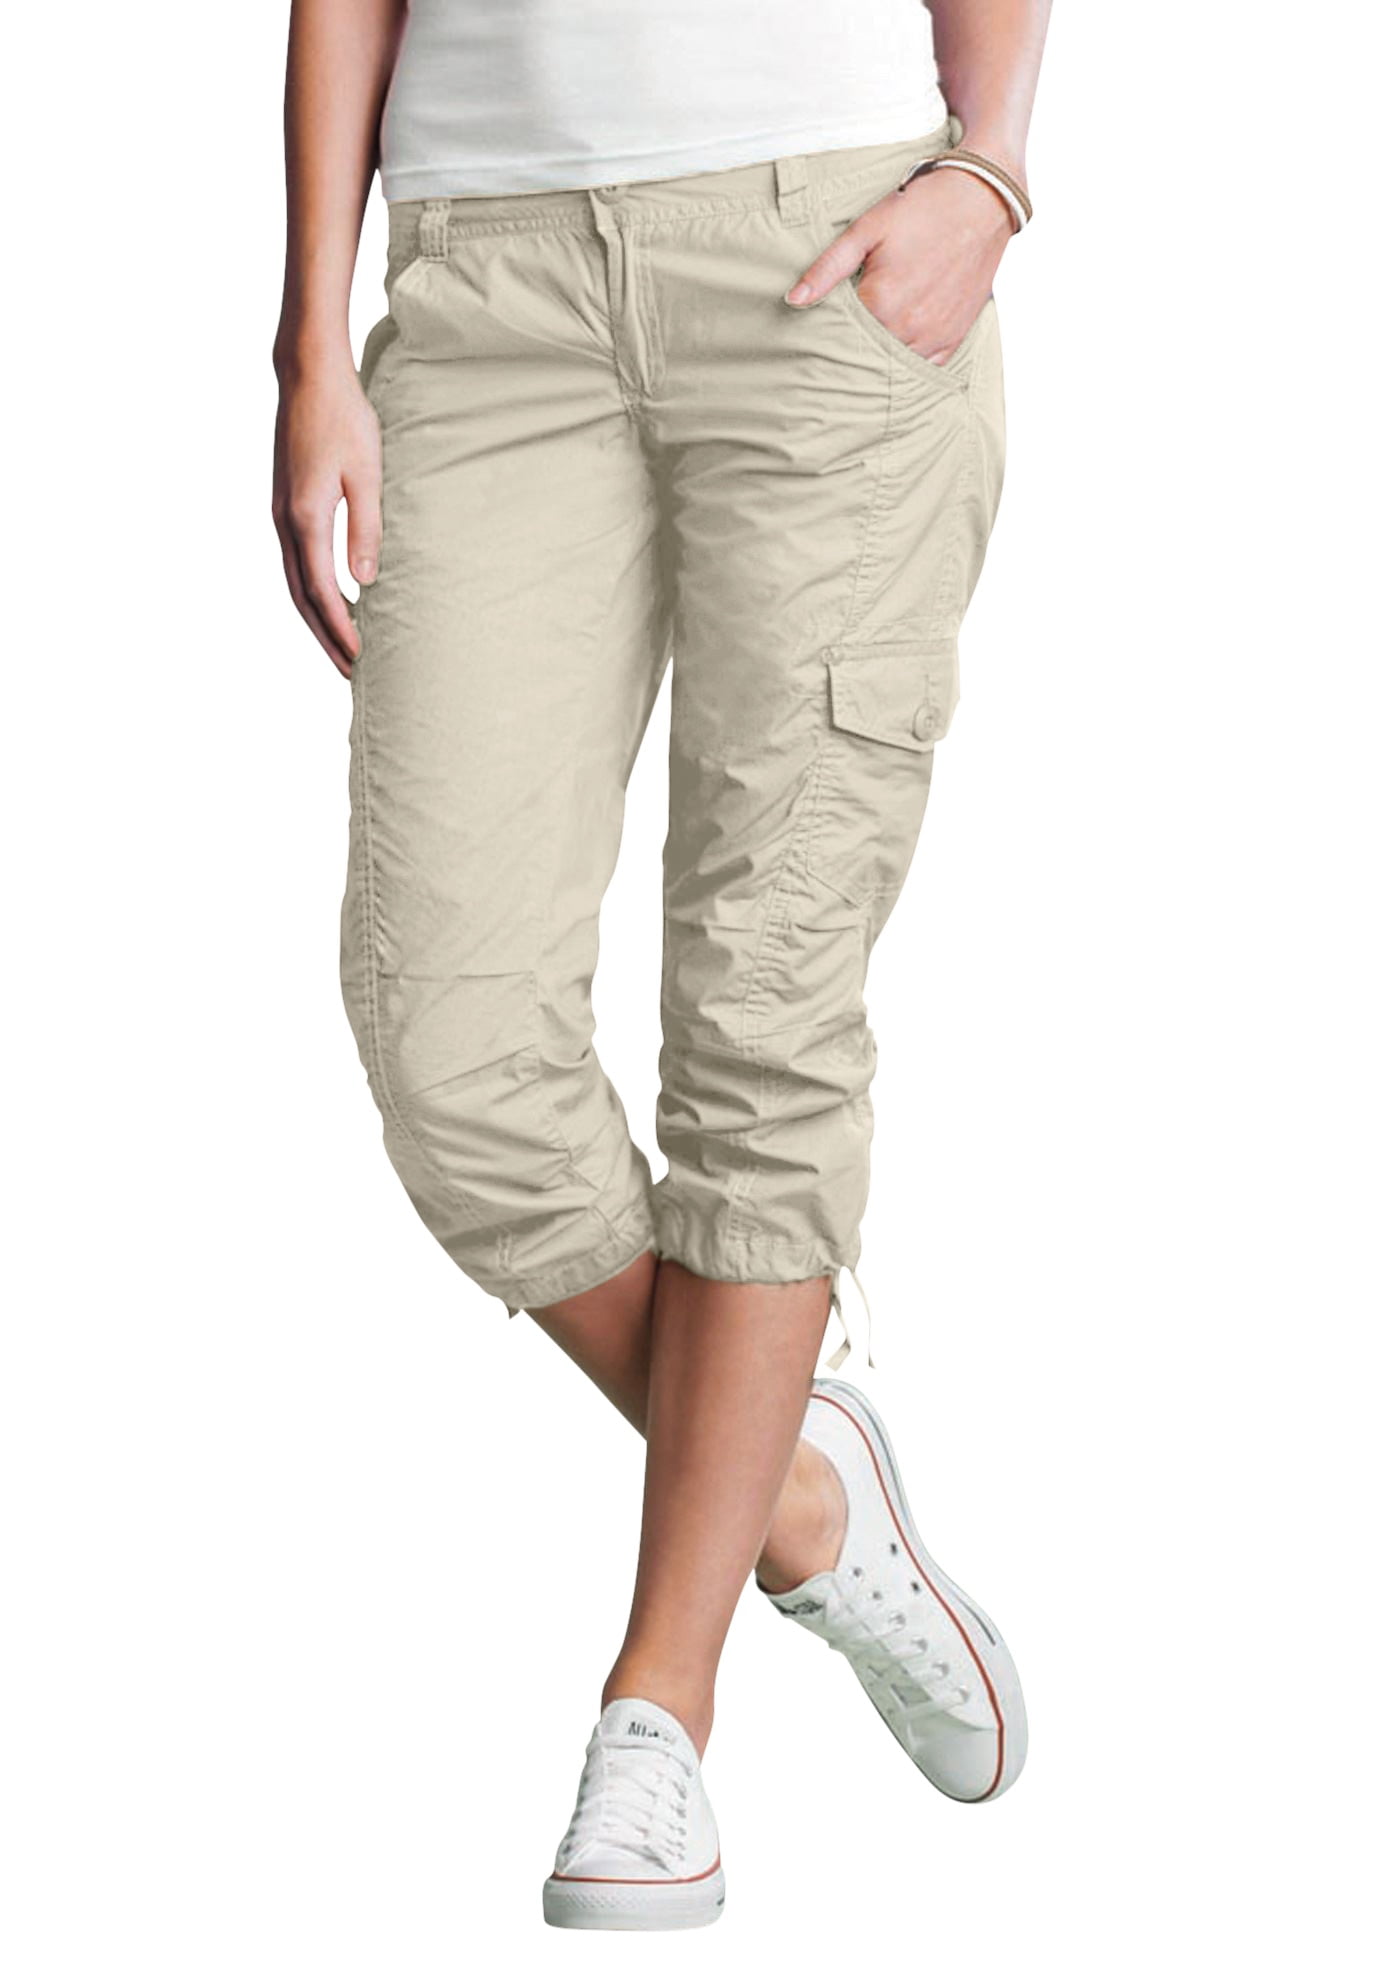 Ellos Women's Stretch Cargo Capris Pants - Walmart.com